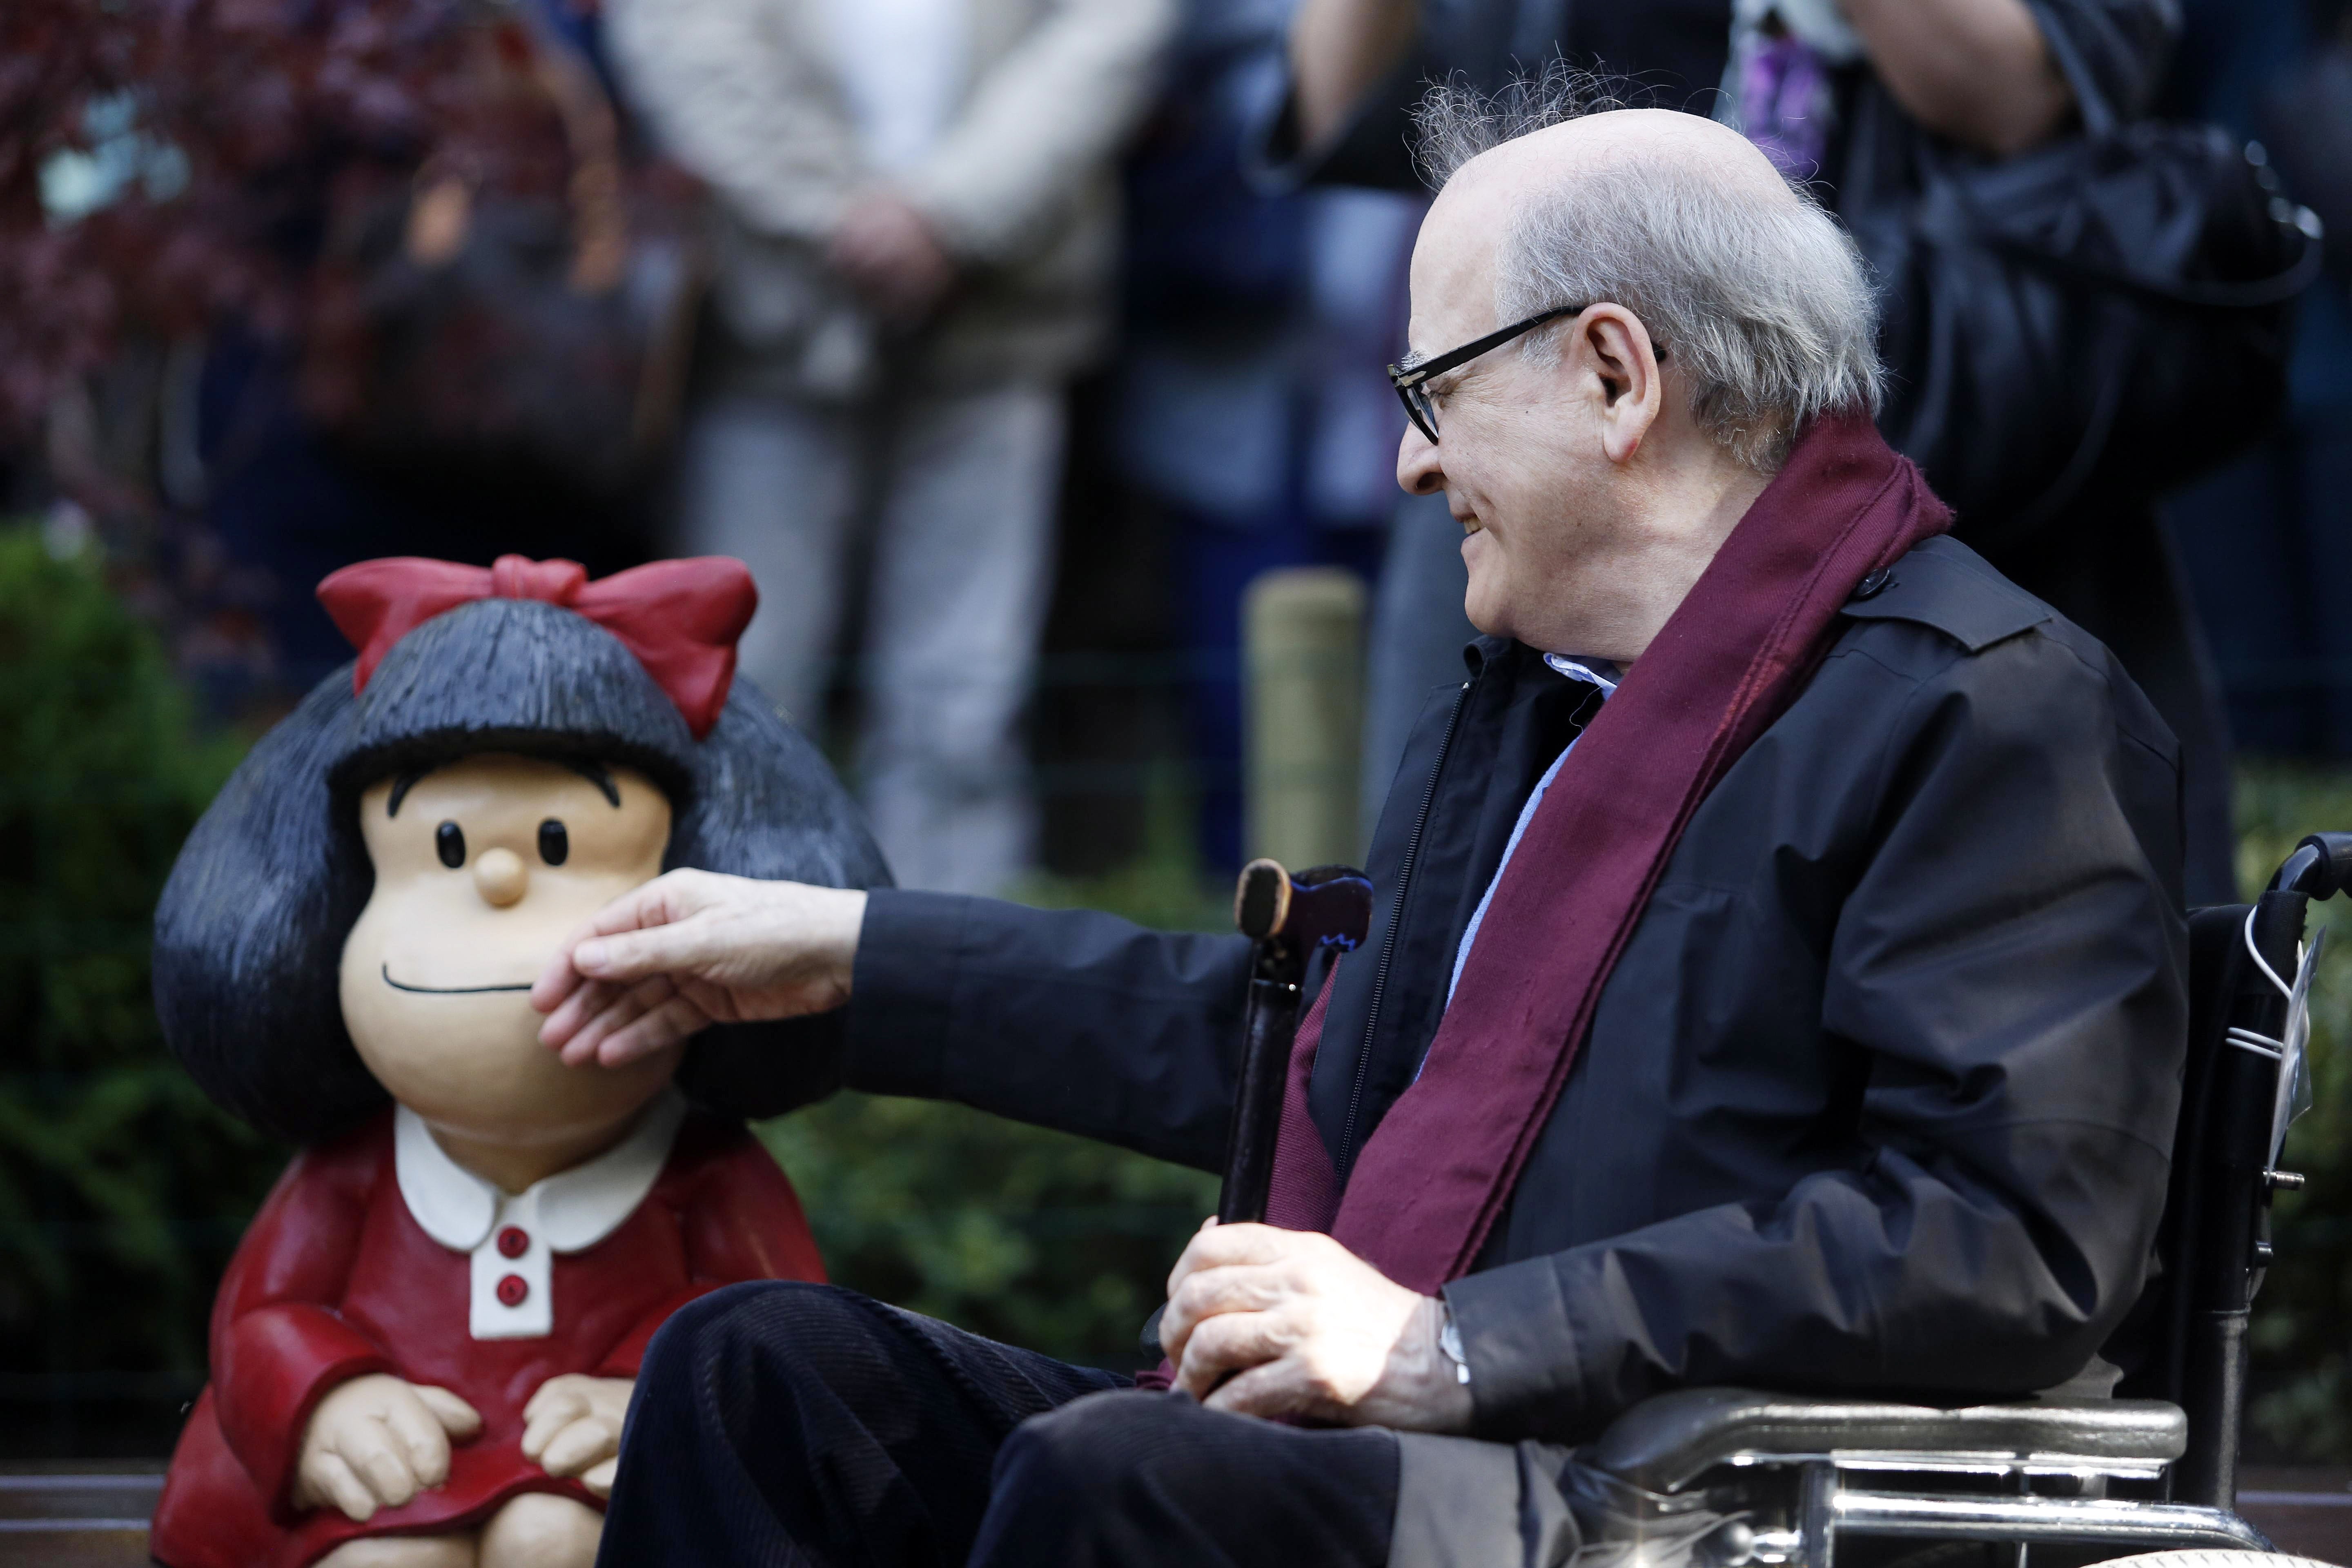 Mafalda de luto: Muere Quino, su creador, a los 88 años